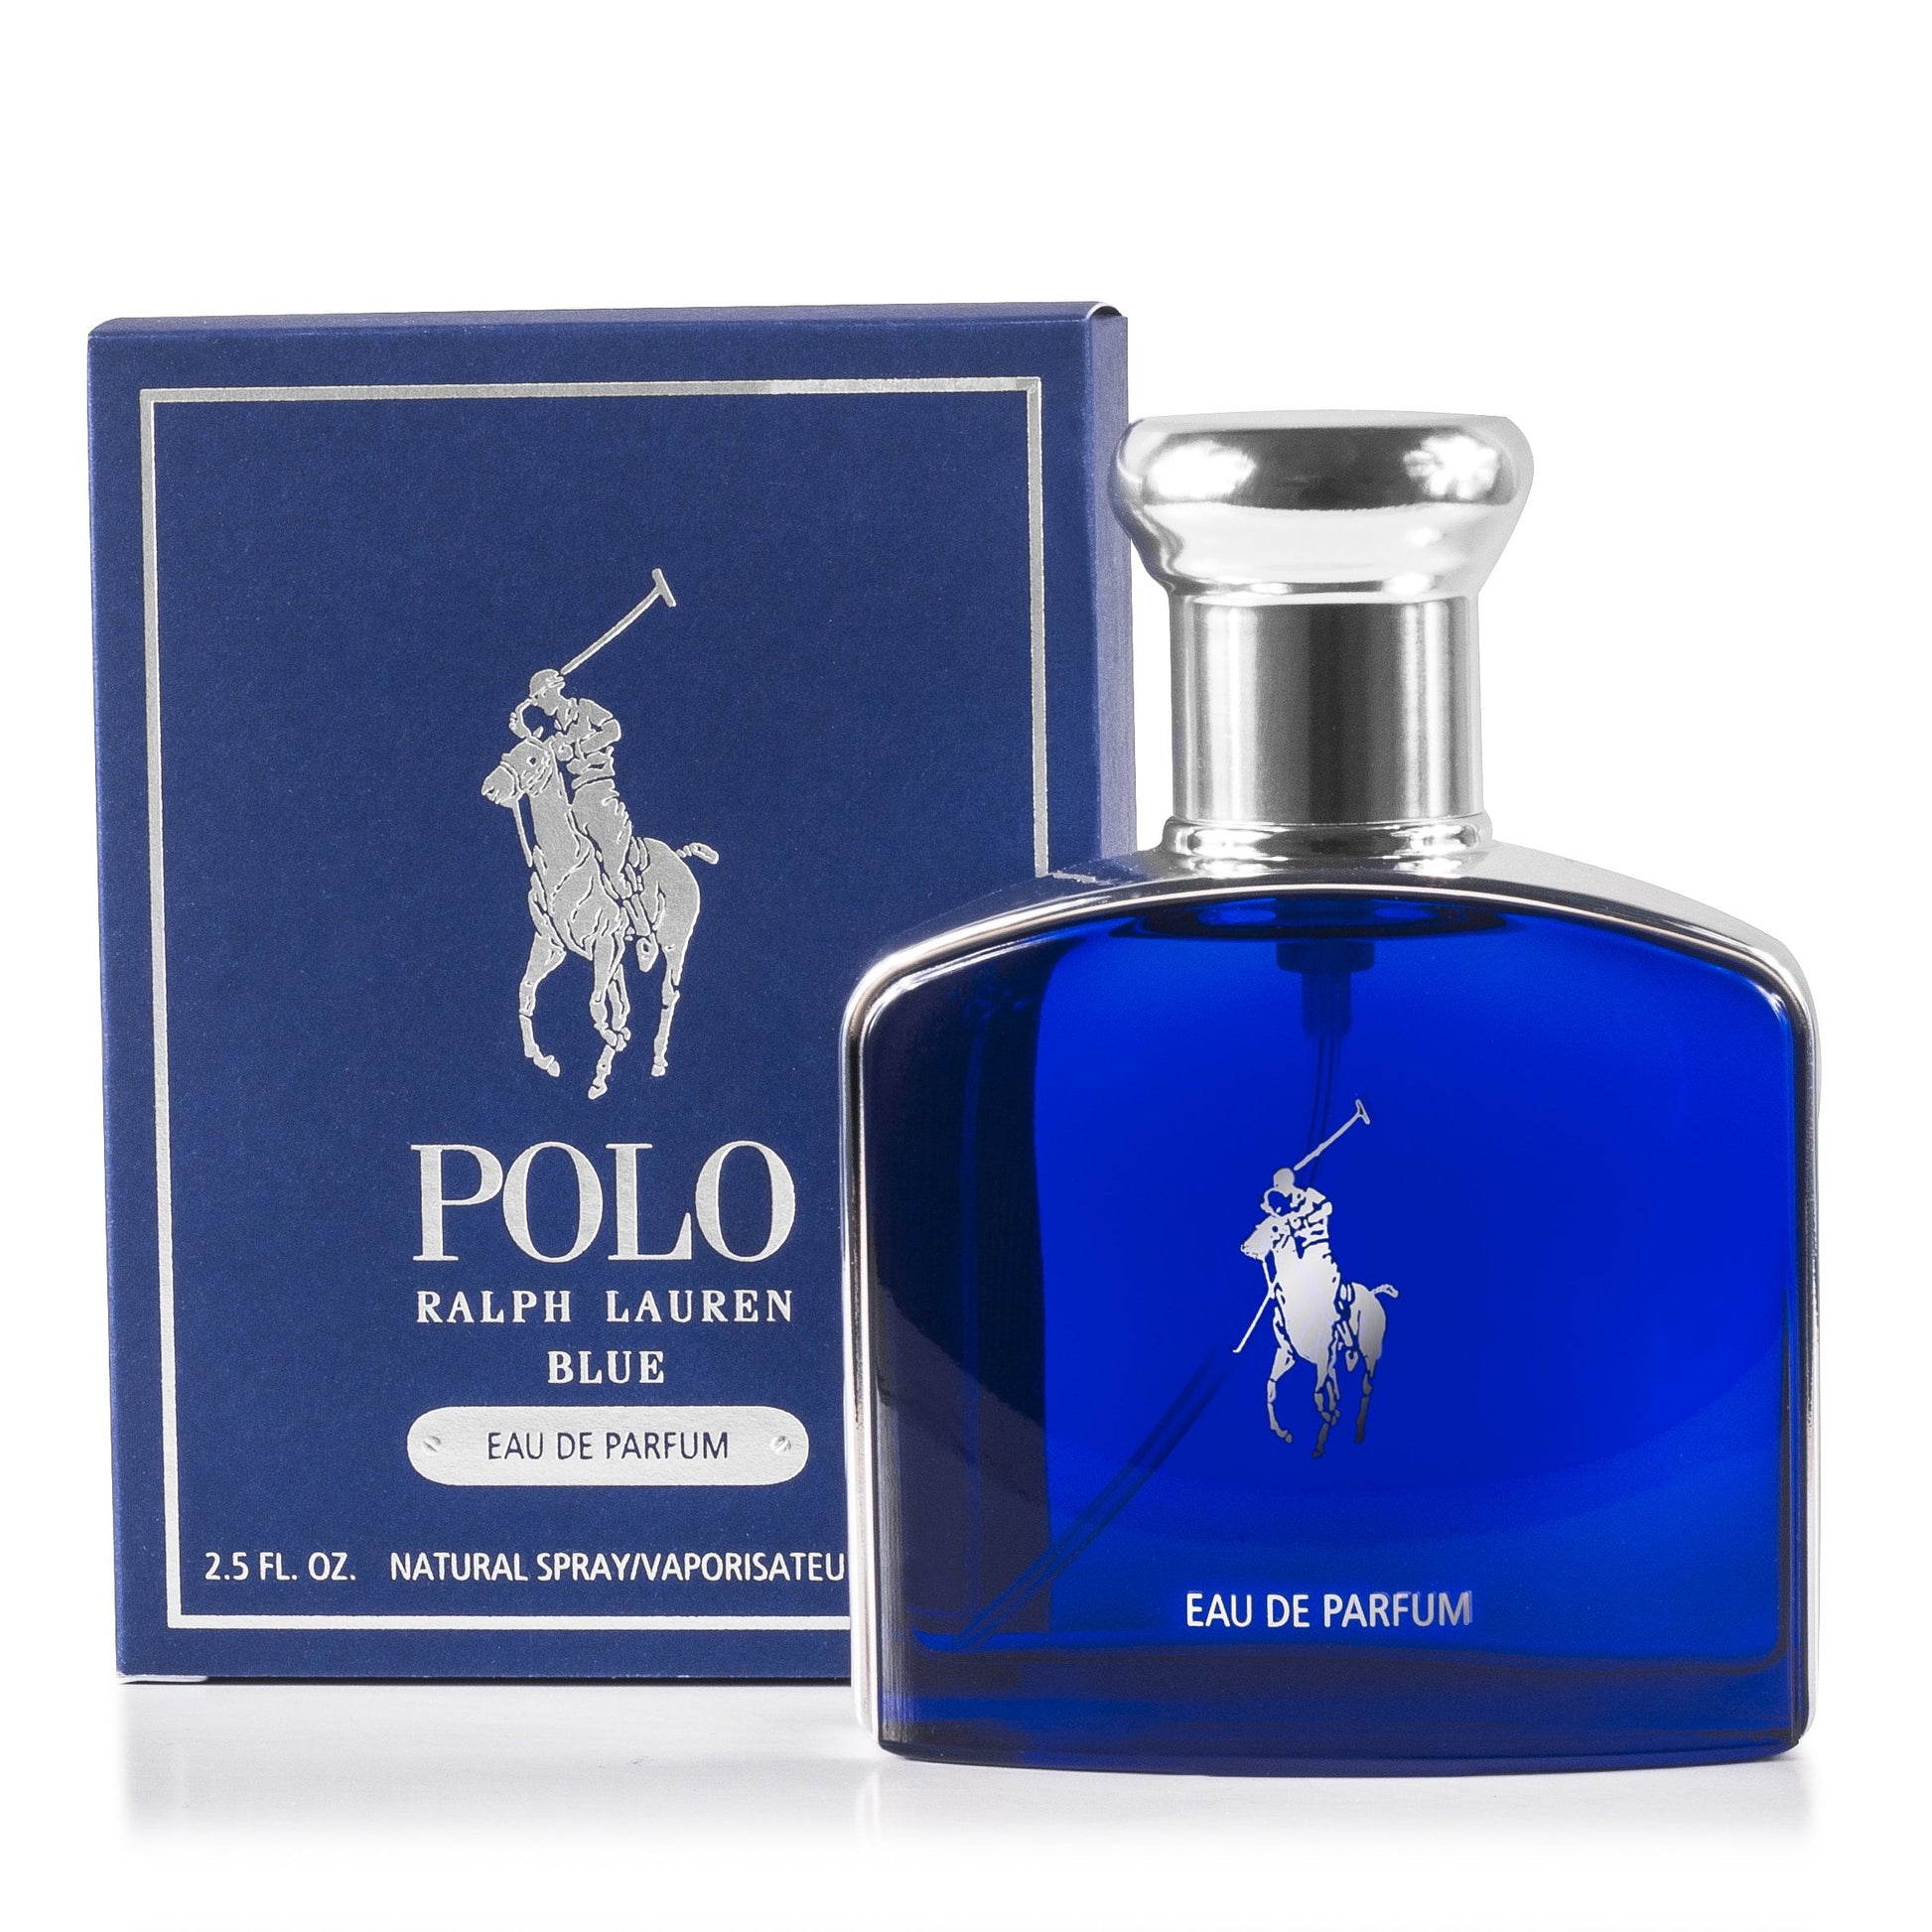 Polo Blue Eau de Parfum Spray for Men by Ralph Lauren, Product image 1